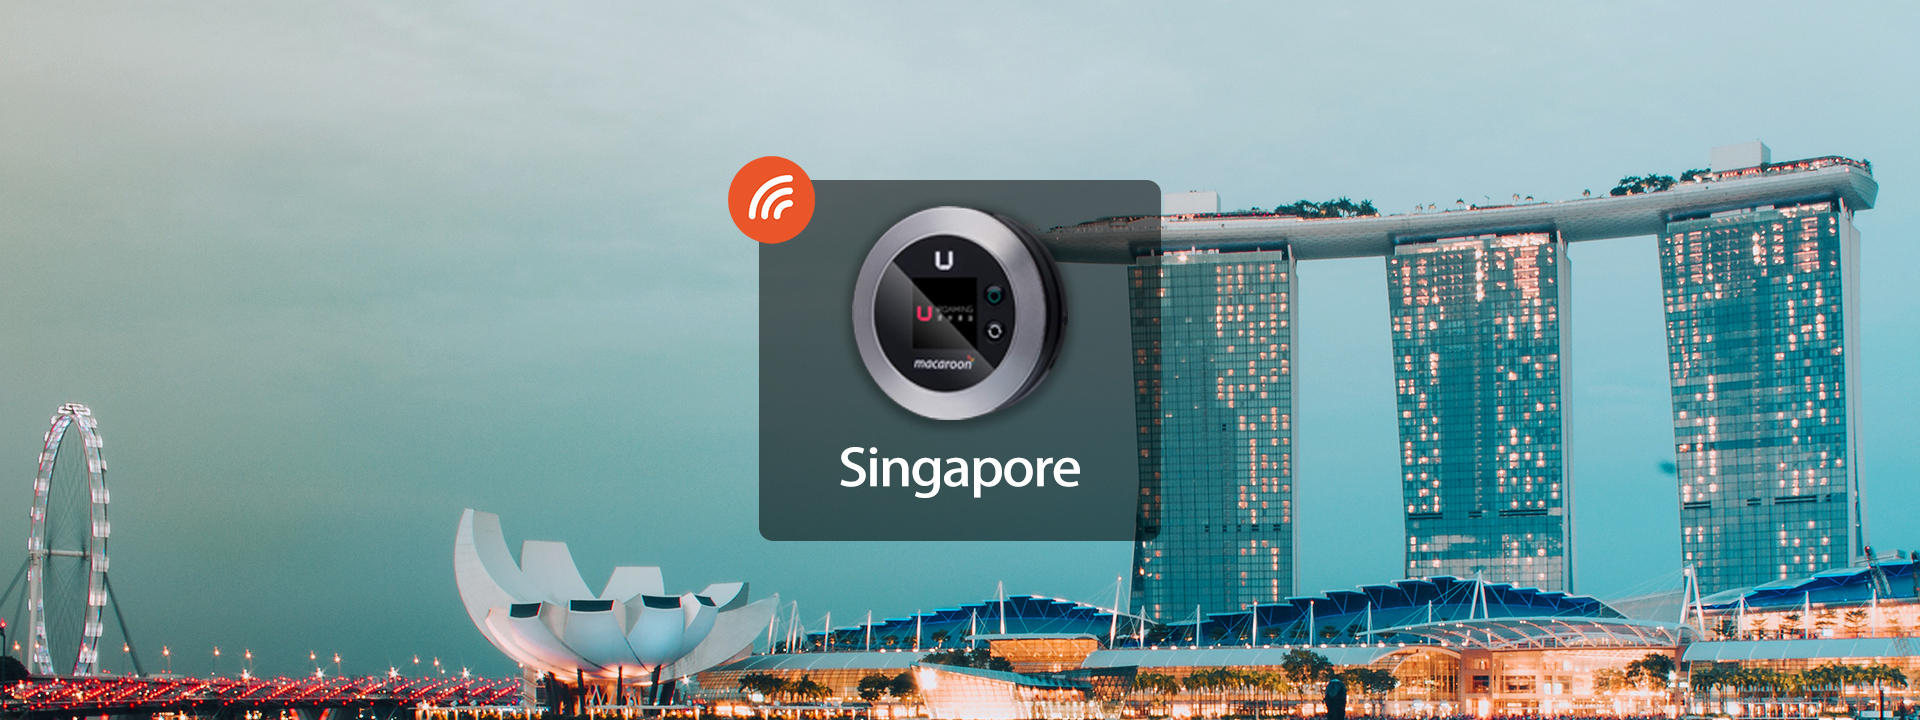 新加坡4G WiFi分享器 香港機場領取（由Uroaming提供）